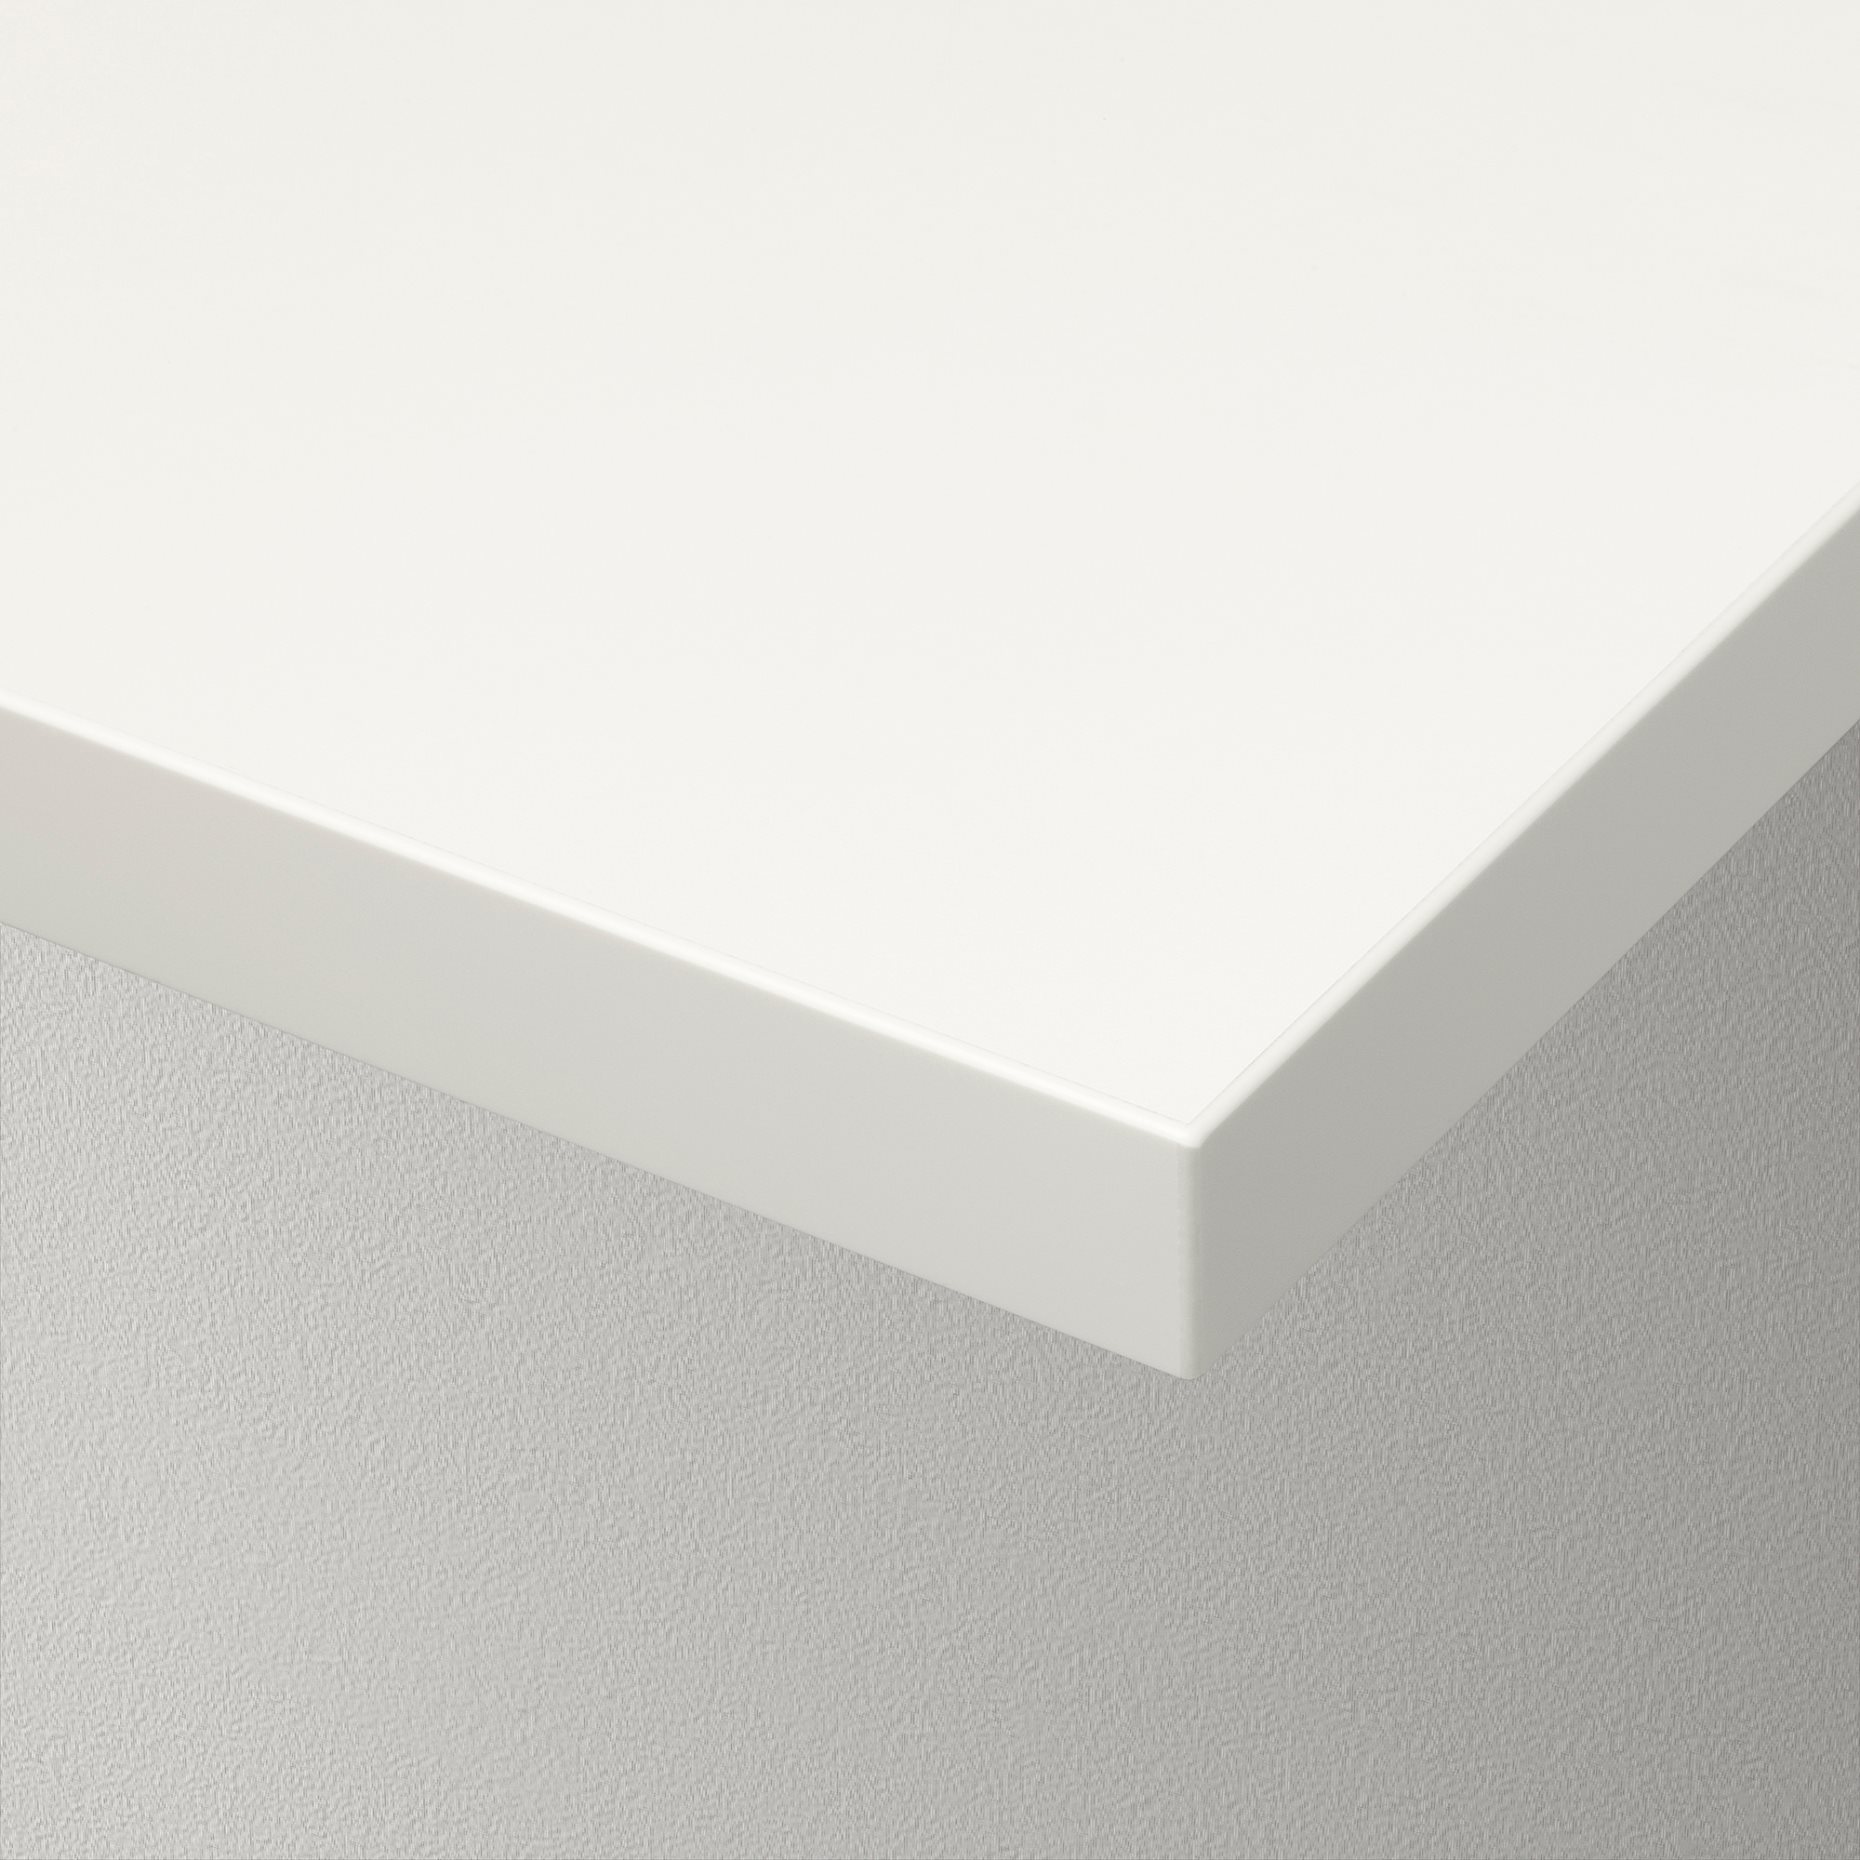 BERGSHULT/PERSHULT, wall shelf, 120x30 cm, 792.907.75